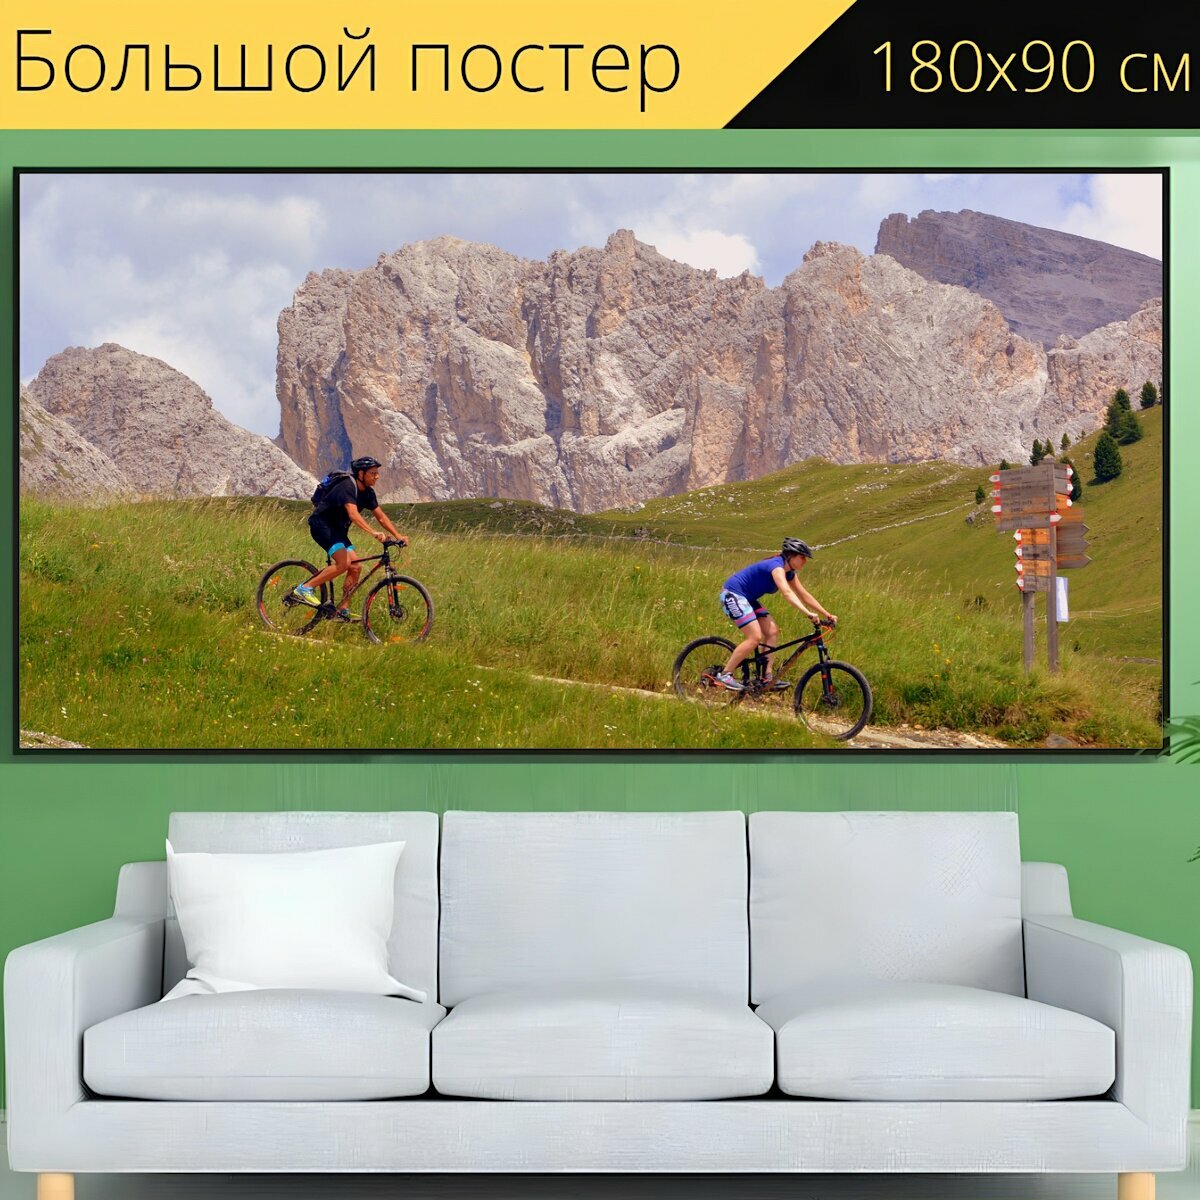 Большой постер "Велосипед, пеший туризм, катание на горных велосипедах" 180 x 90 см. для интерьера